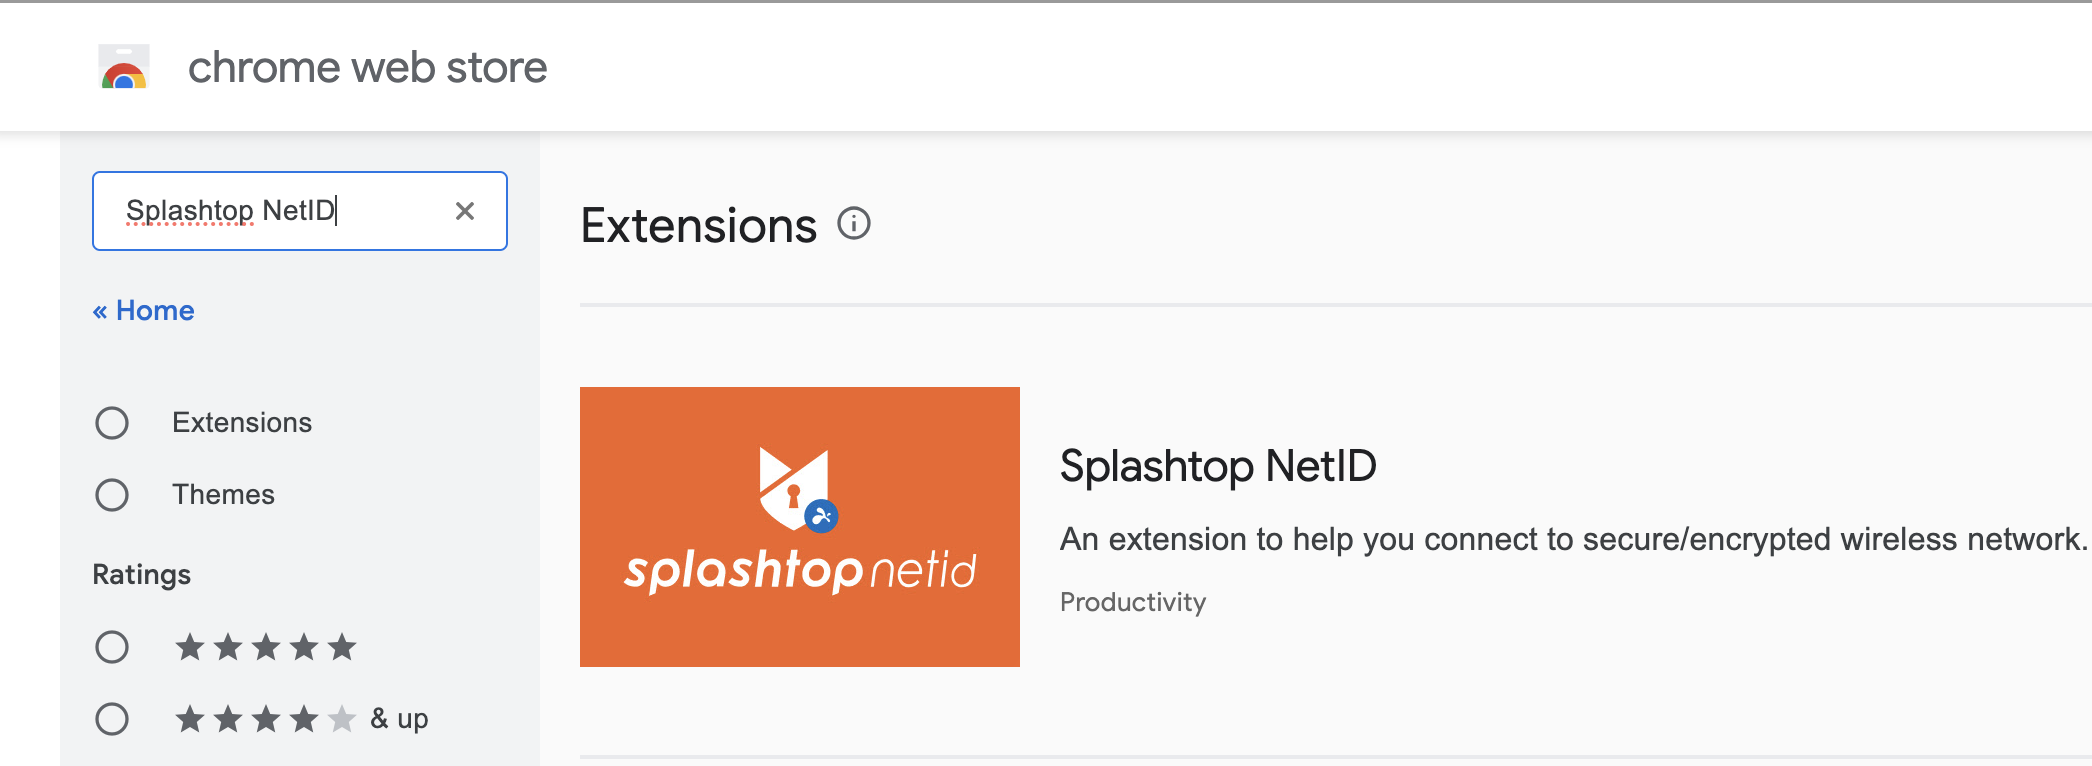 Search for Splashtop NetID 